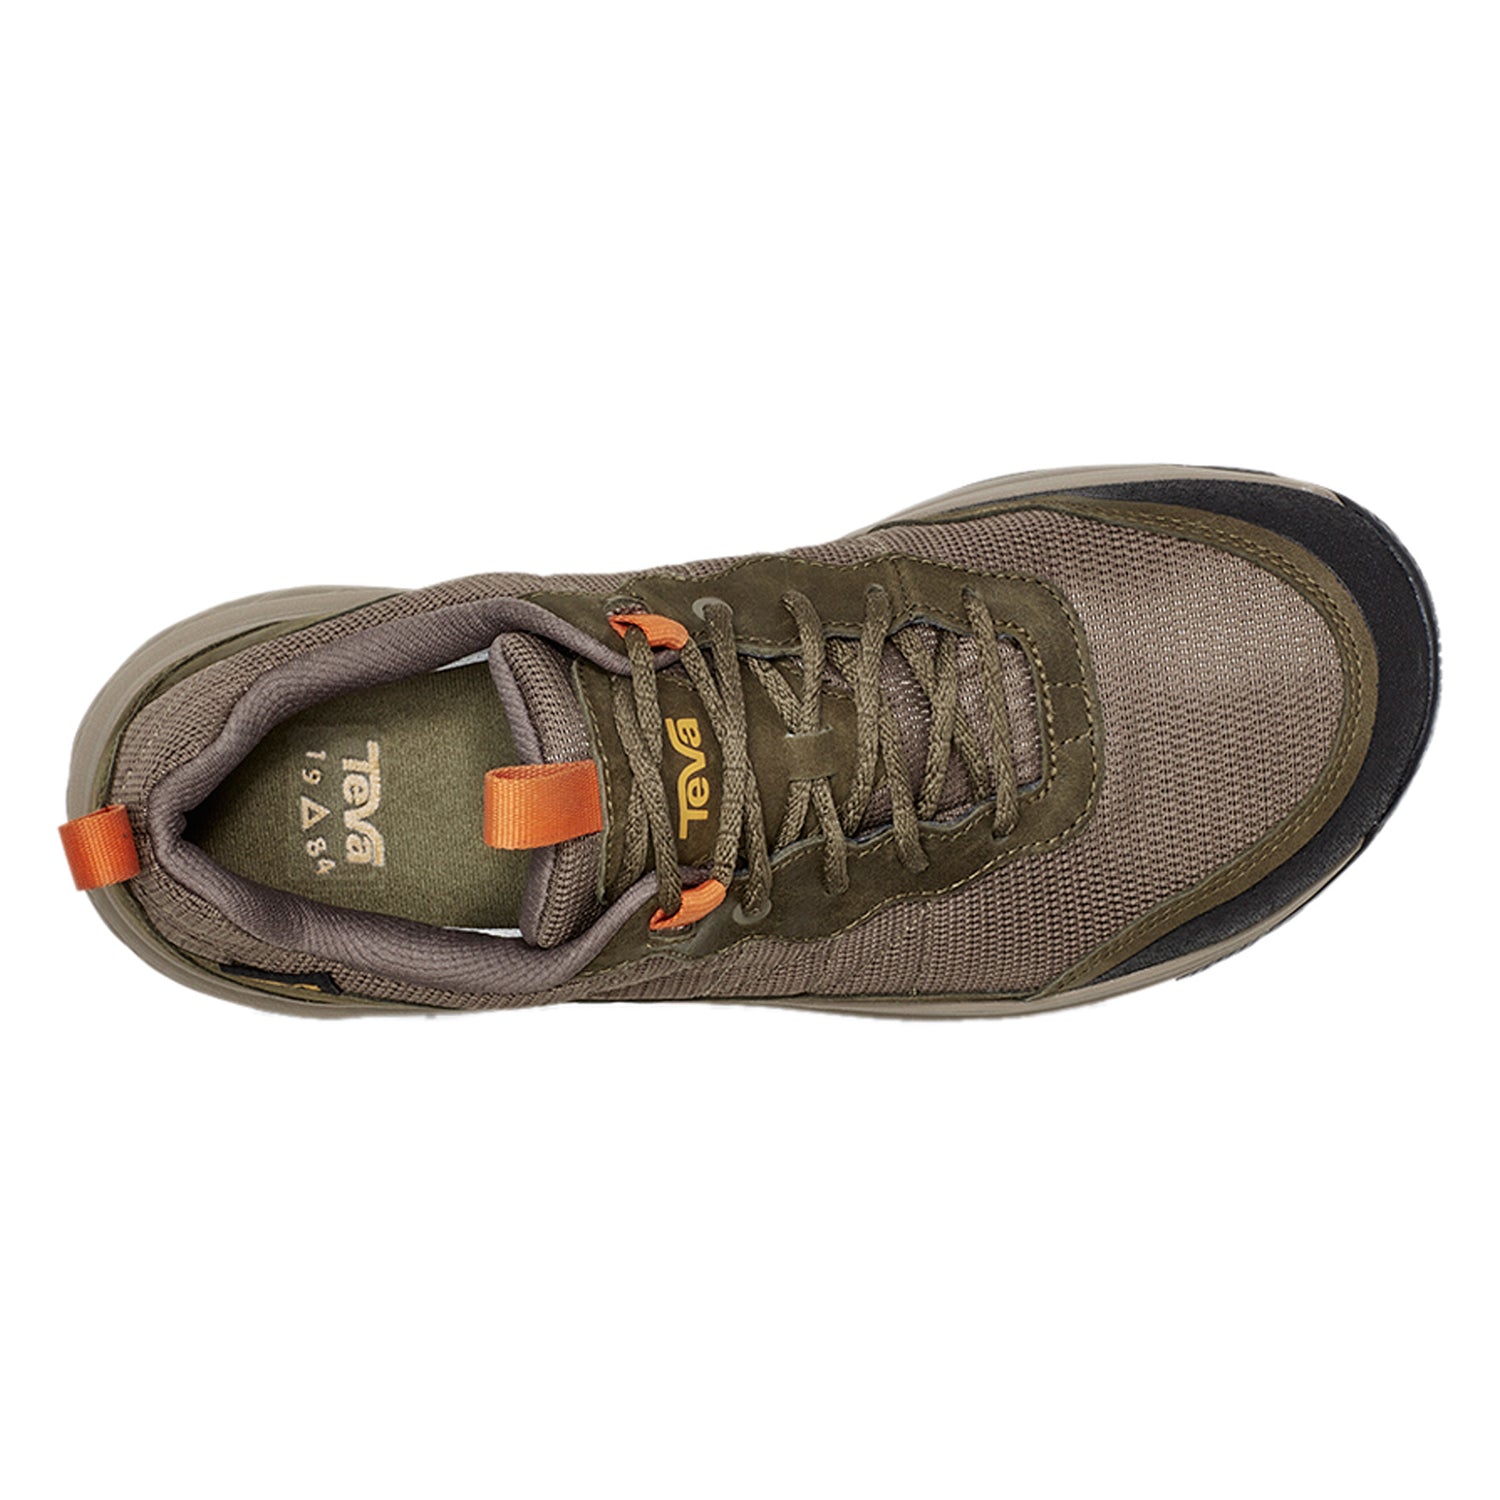 Peltz Shoes  Men's Teva Ridgeview RP Waterproof Hiking Shoe DARK OLIVE 1116627-DOL